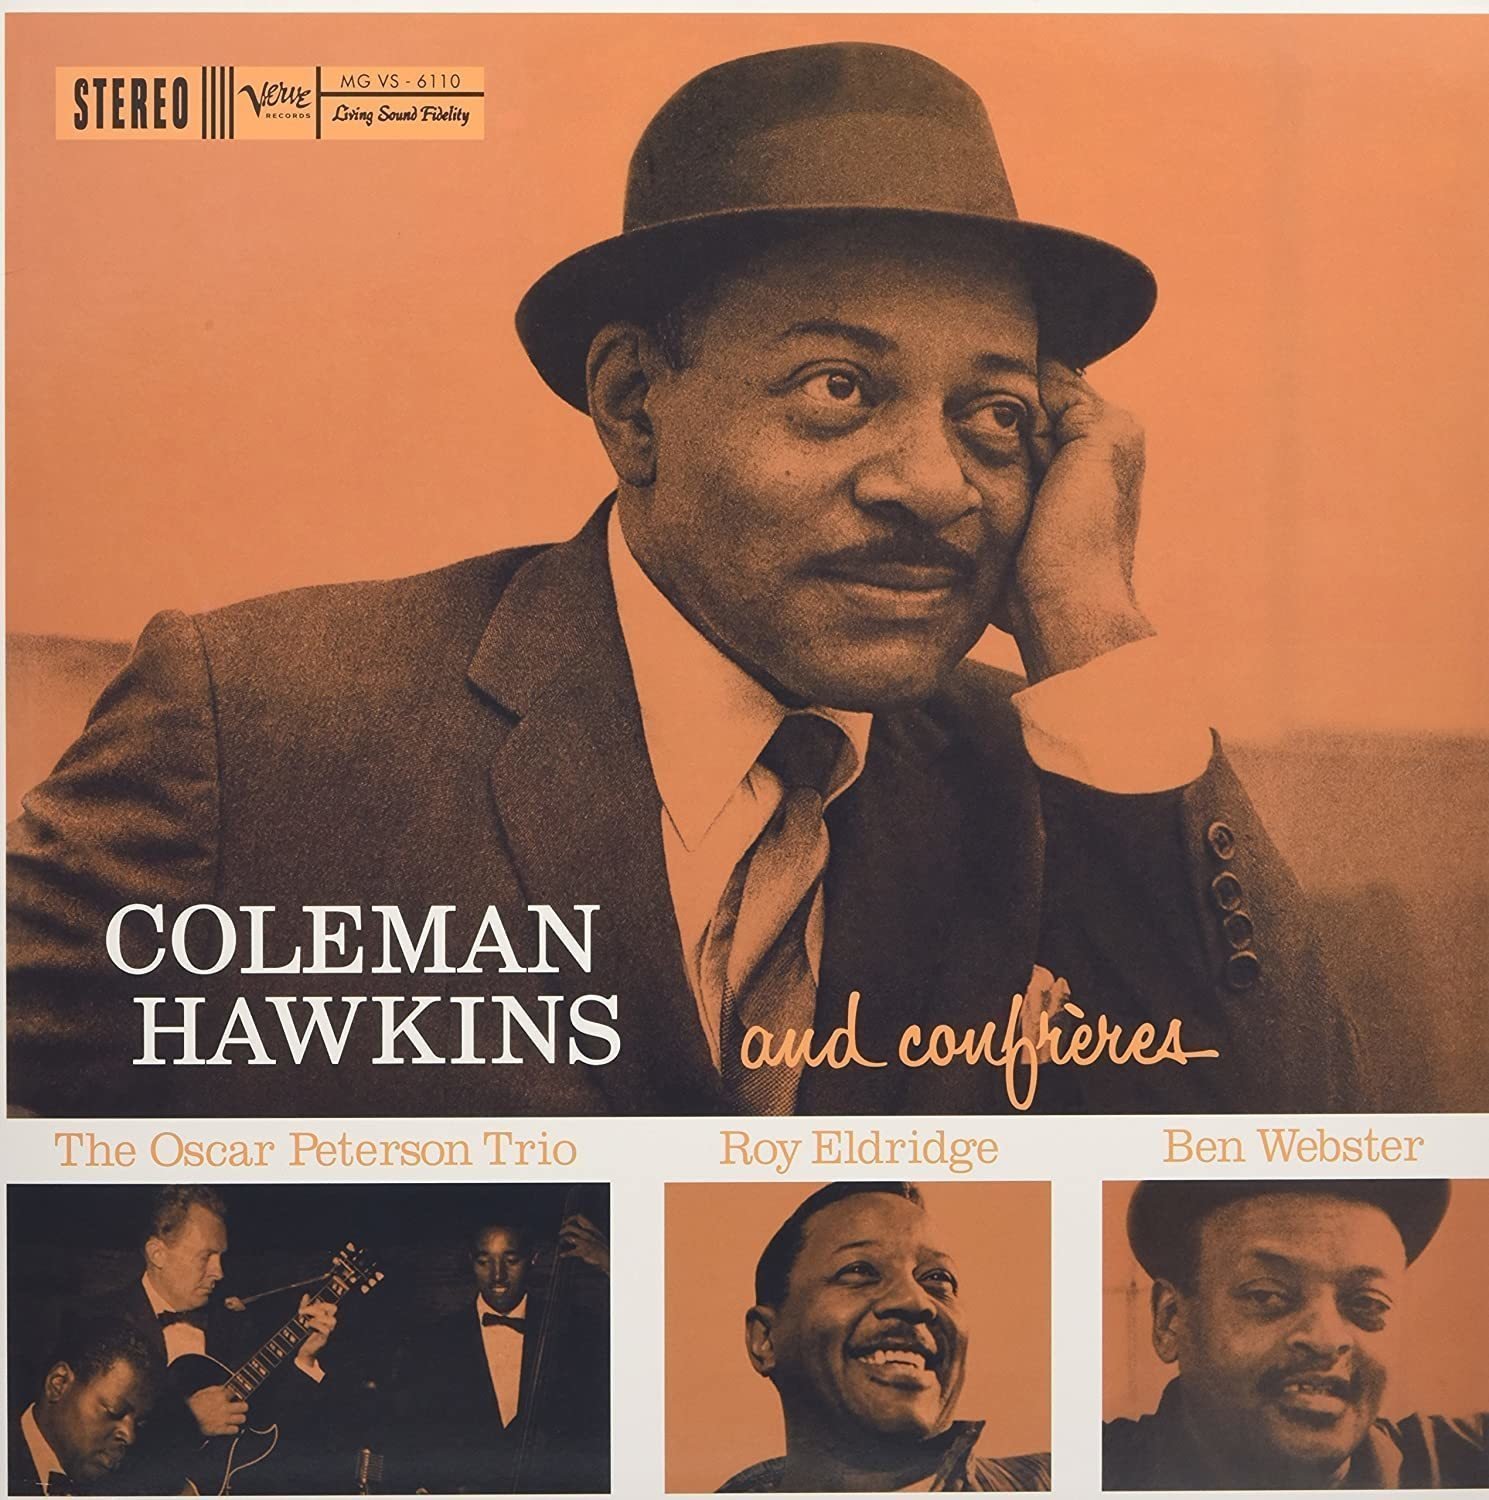 Vinyl Record Coleman Hawkins - Coleman Hawkins and Confreres (LP)